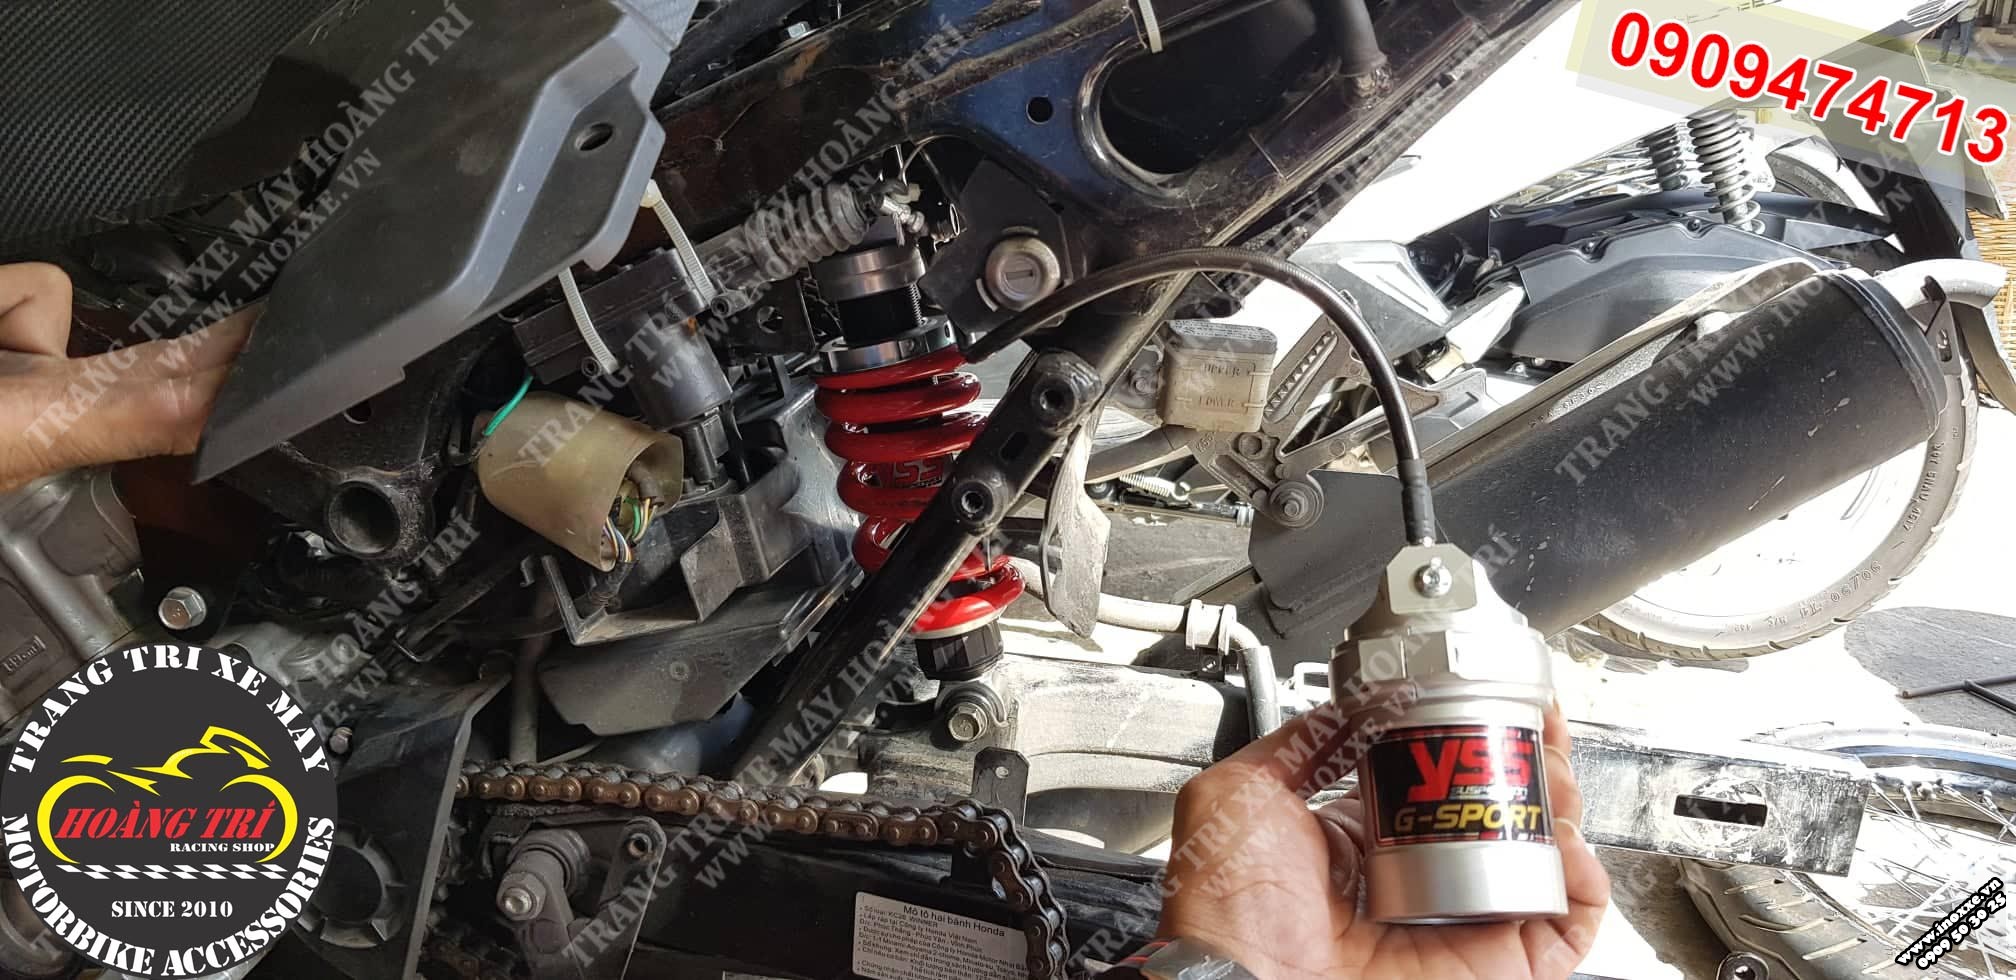 Quá trình tháo phuộc zin và lắp đặt phuộc bình dầu YSS G-Sport cho xe Honda Winner